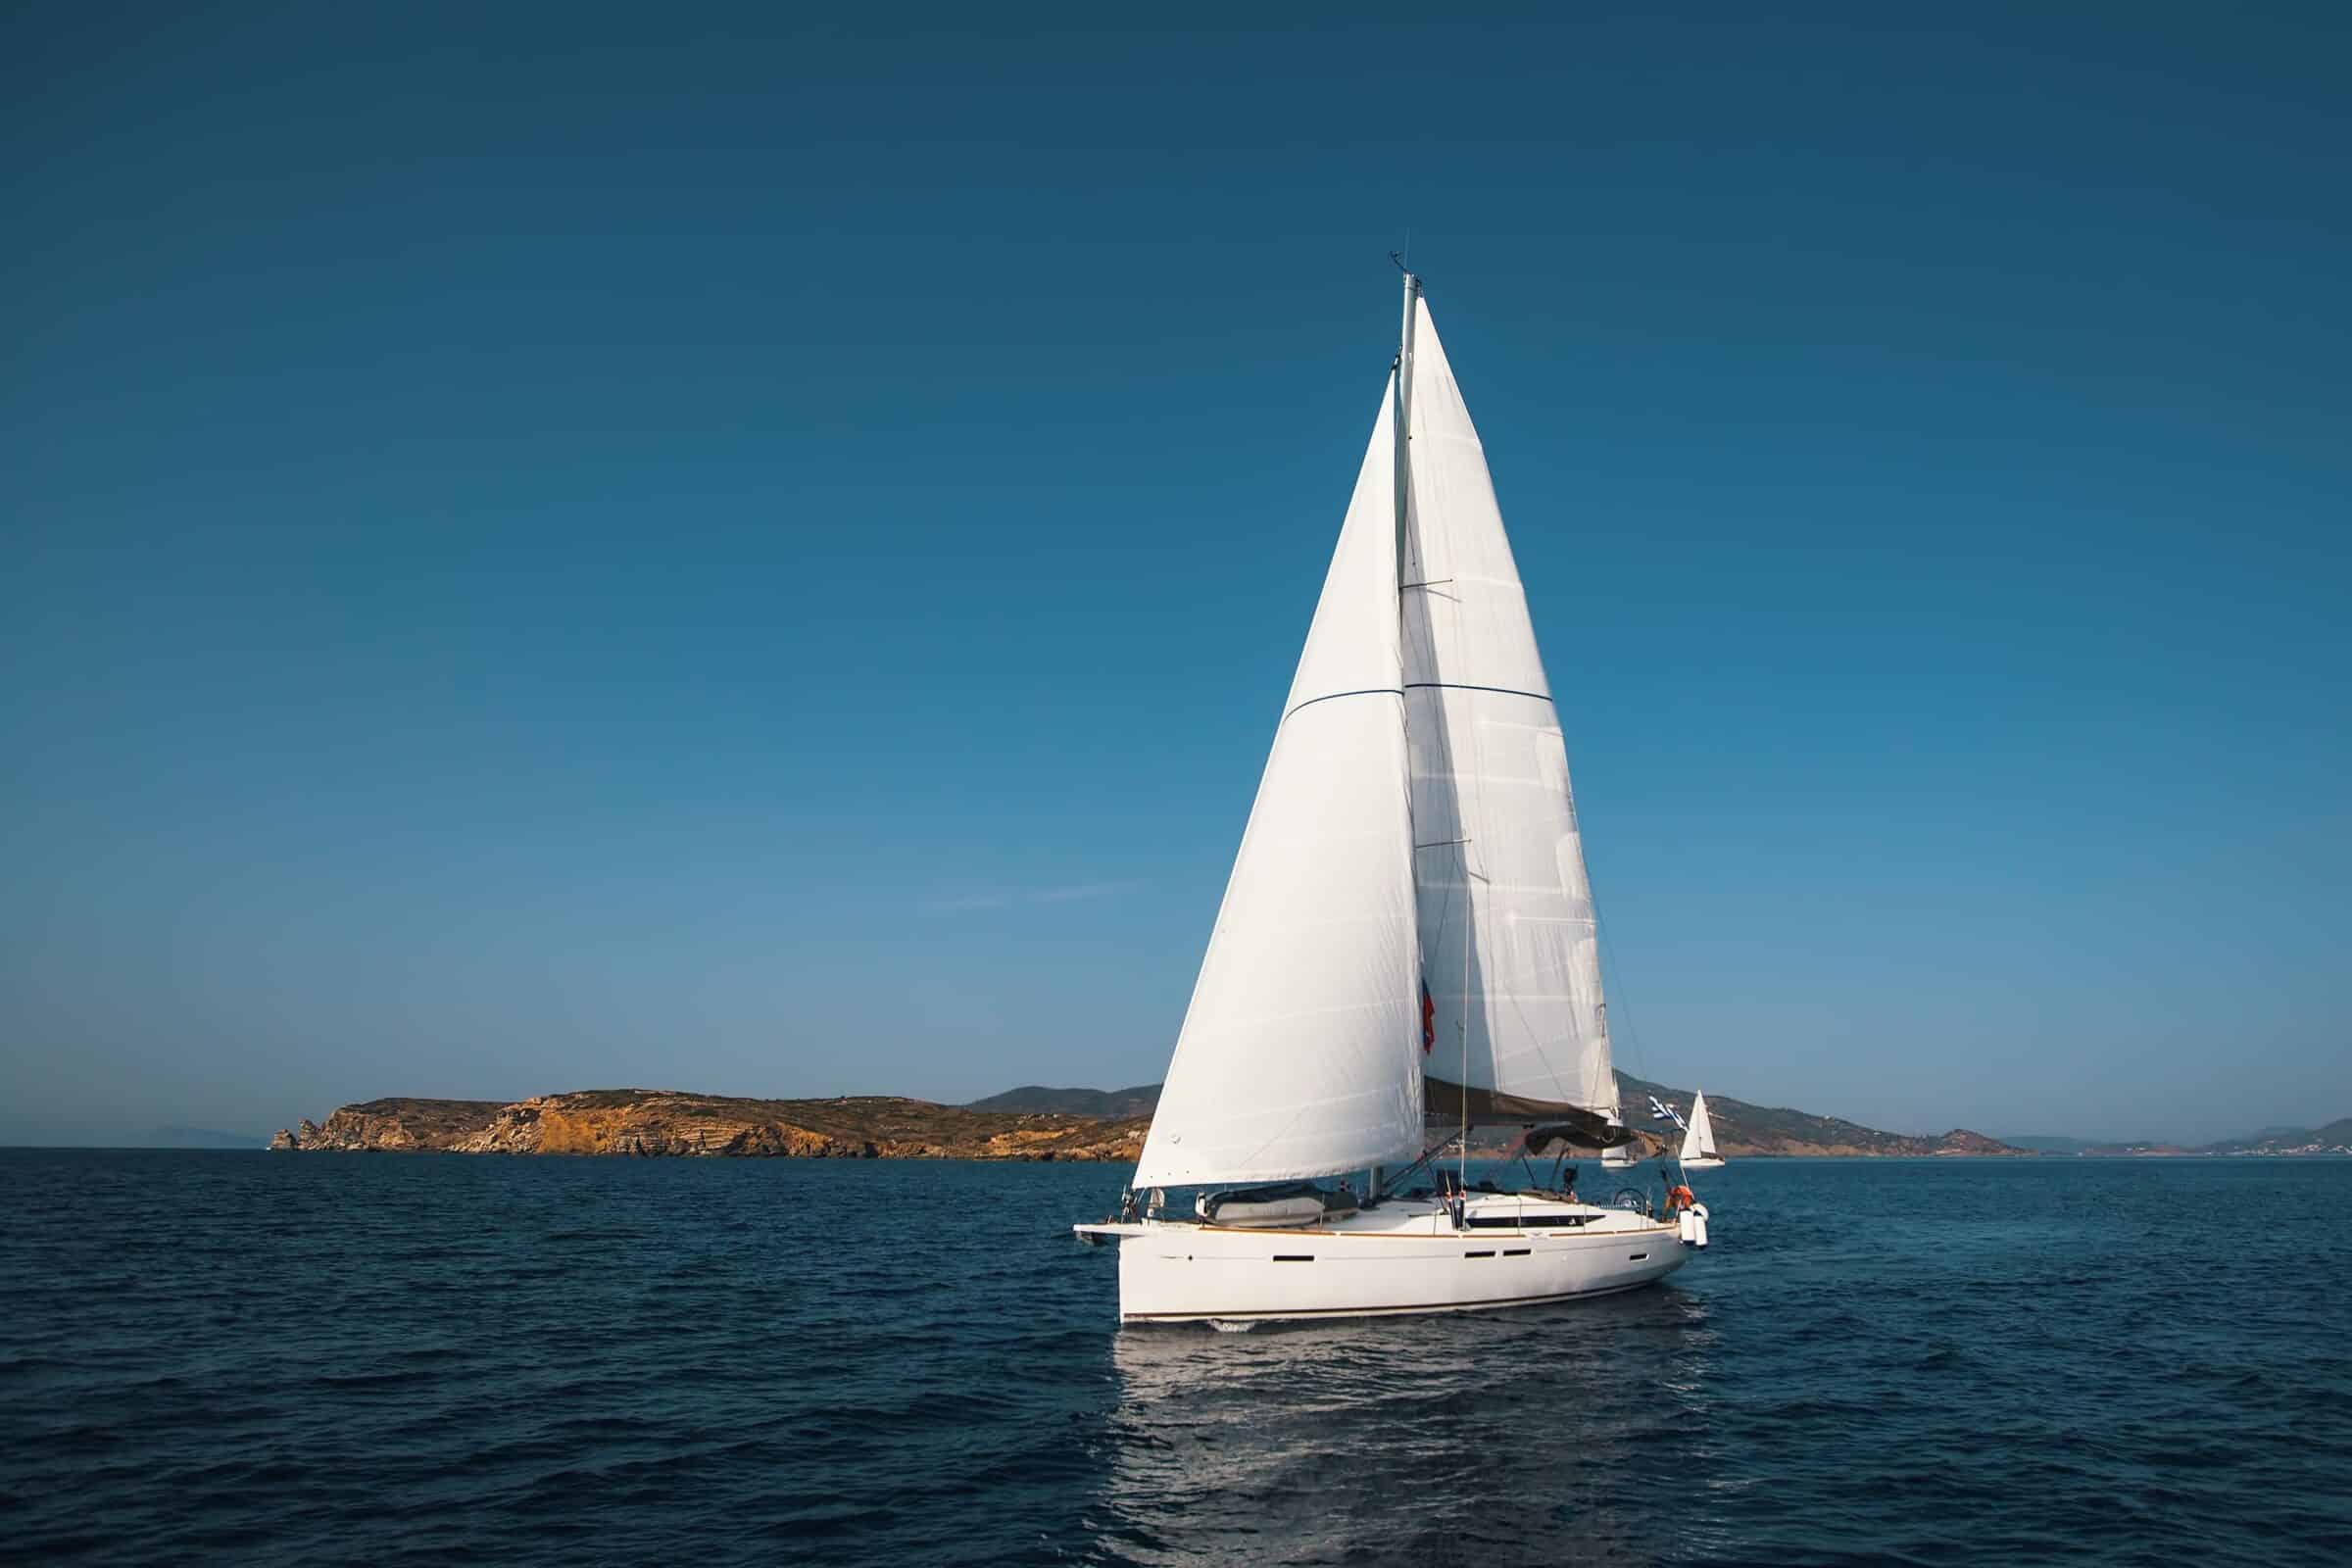 Scontro tra un aliscafo e una barca a vela a Lipari: in tre finiscono in mare